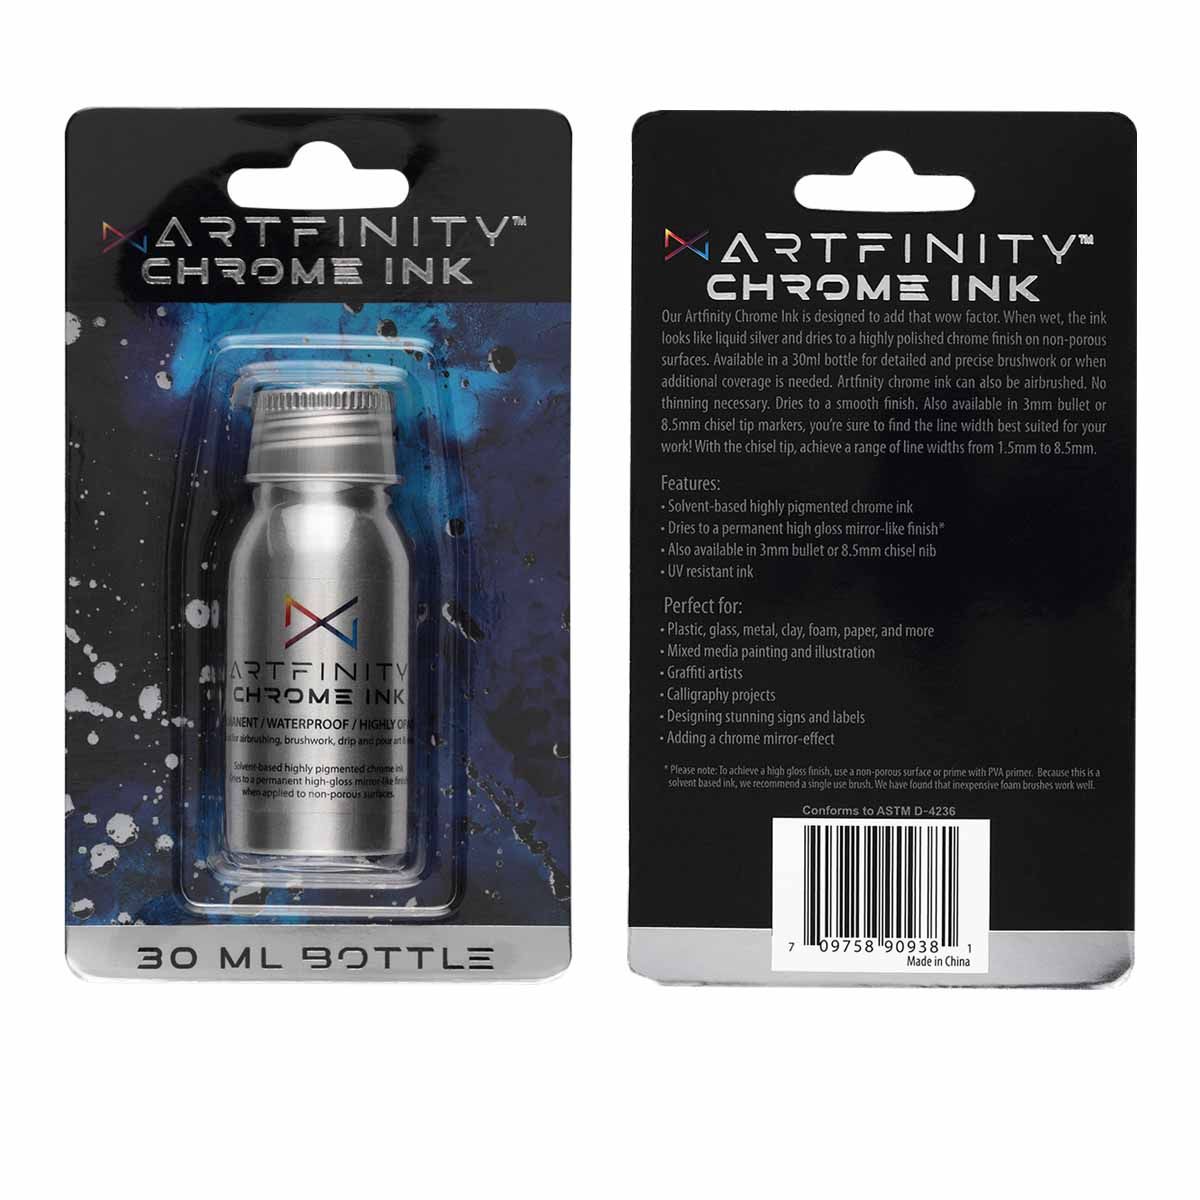 Artfinity Chrome Ink 30ml Aluminum Bottle Packaging